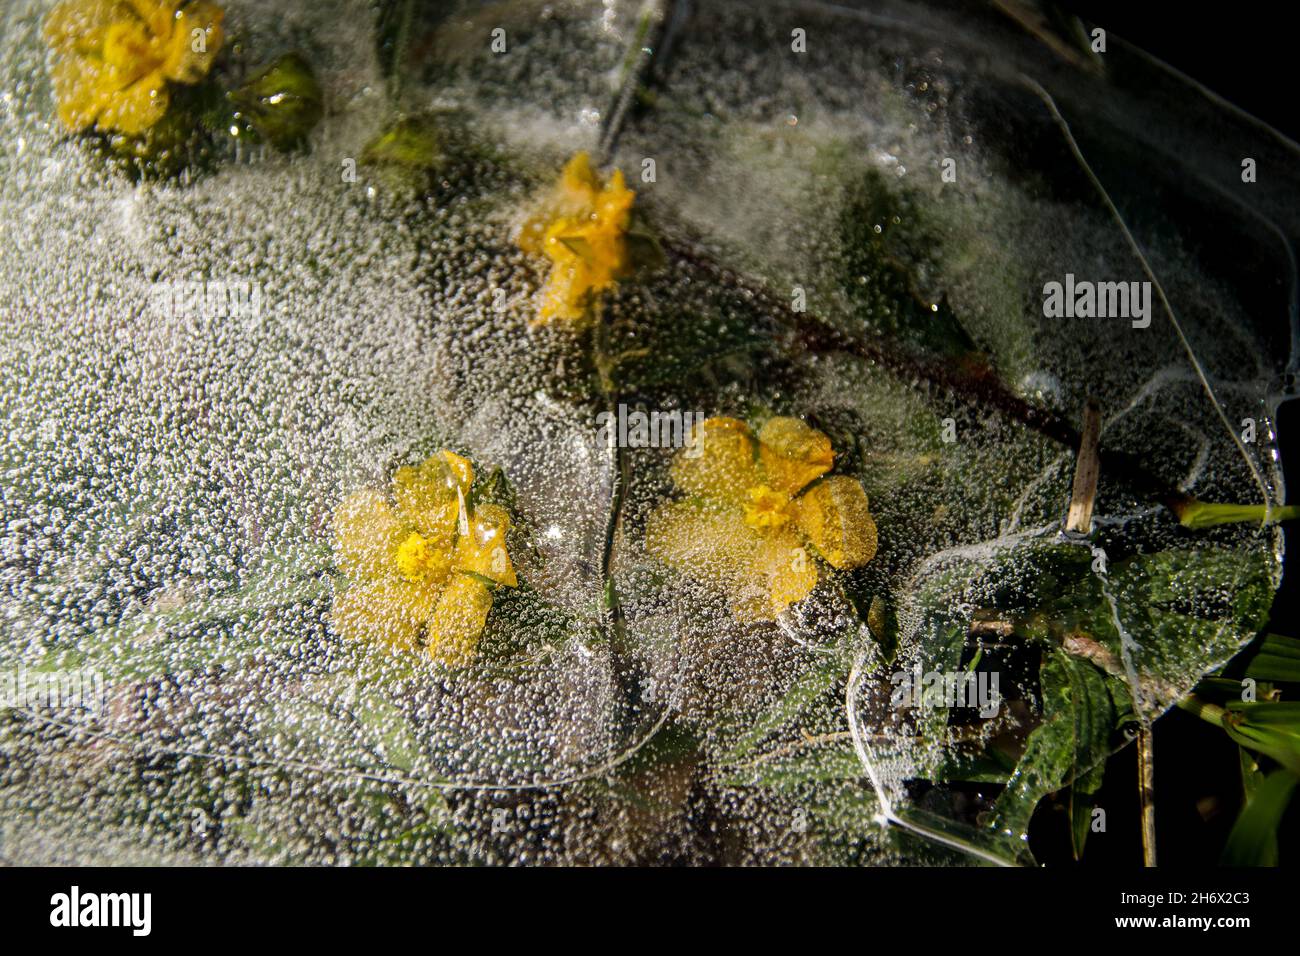 Gelbe Blüten, die im auftauenden Eis gefangen sind und das Konzept des Winters zeigen, der dem Frühling oder dem Saisonwechsel Platz macht Stockfoto